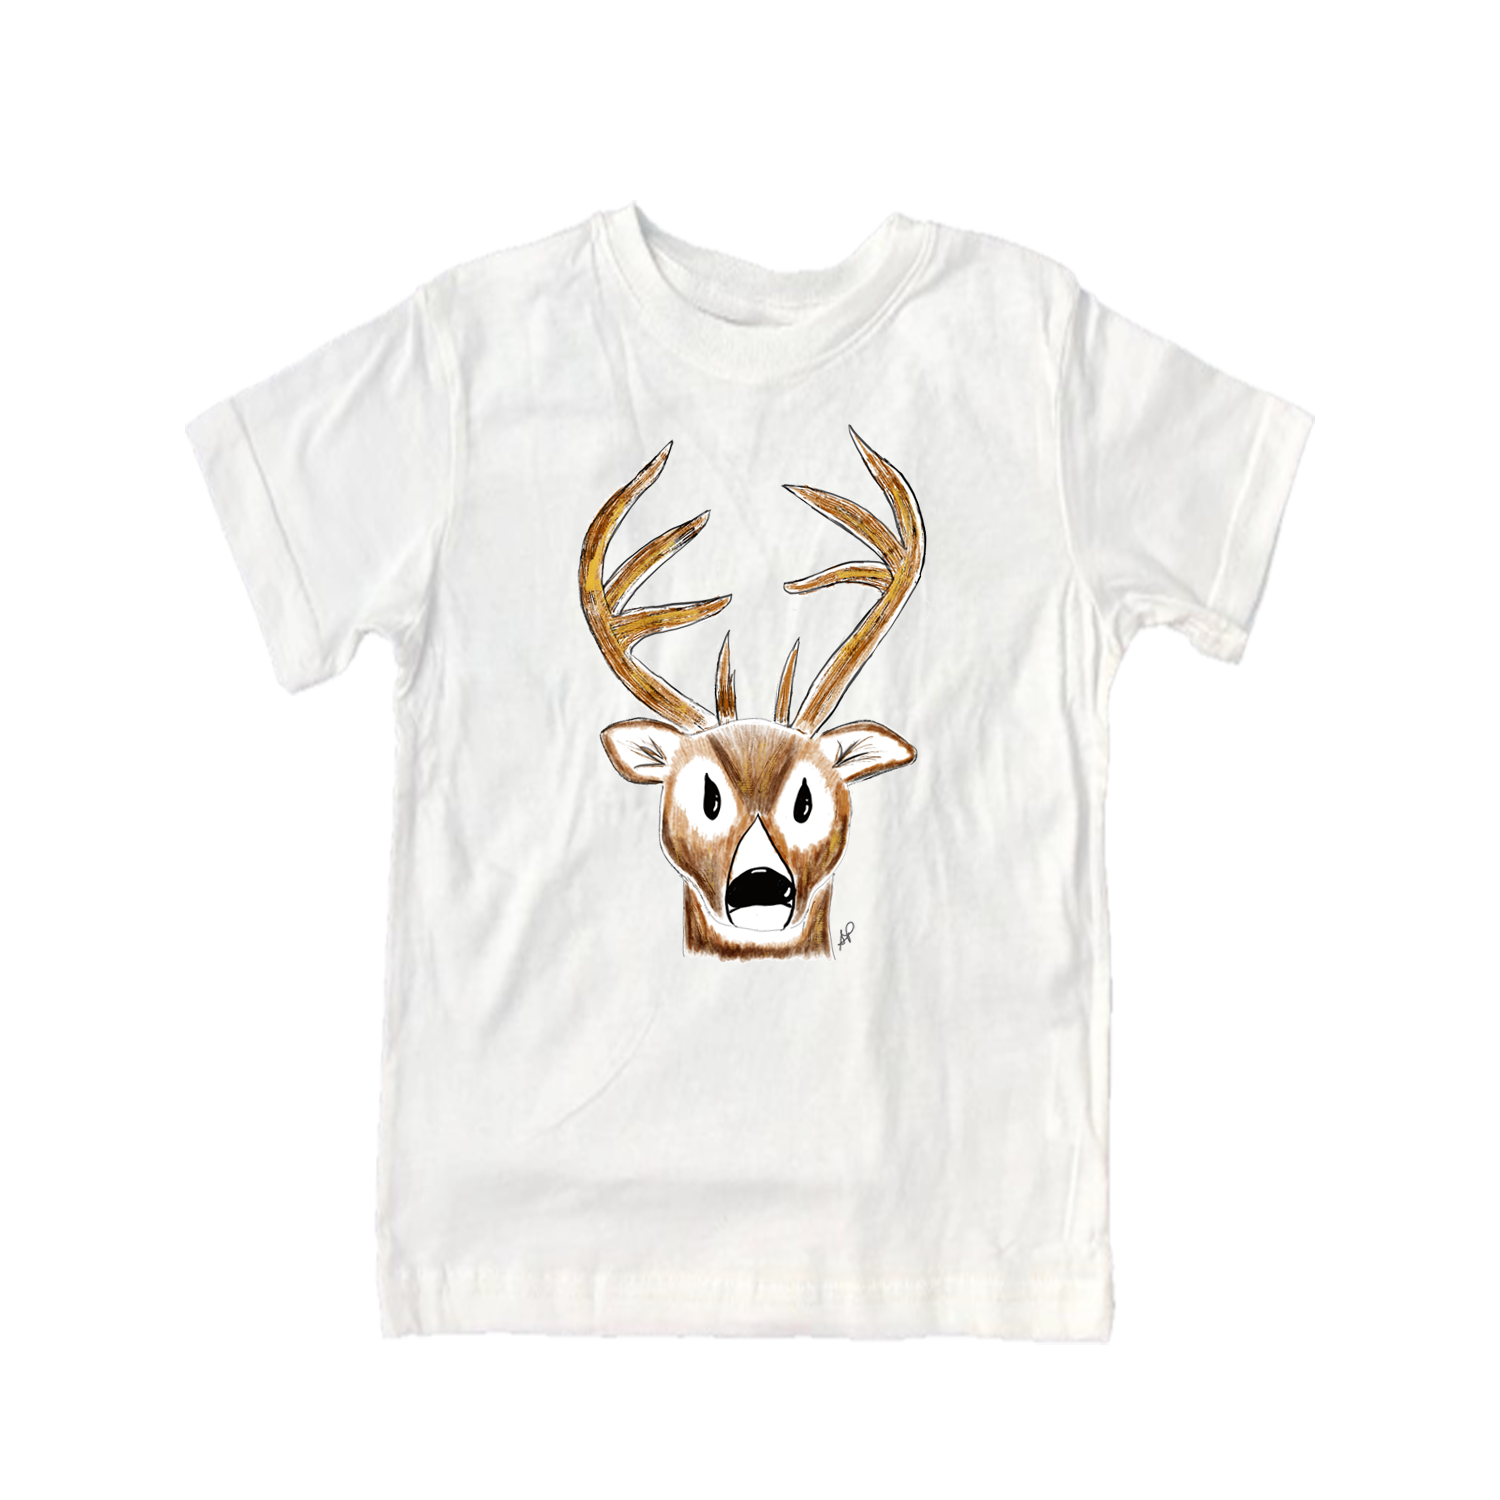 Cotton Tee Shirt Short Sleeve 2117 Deer